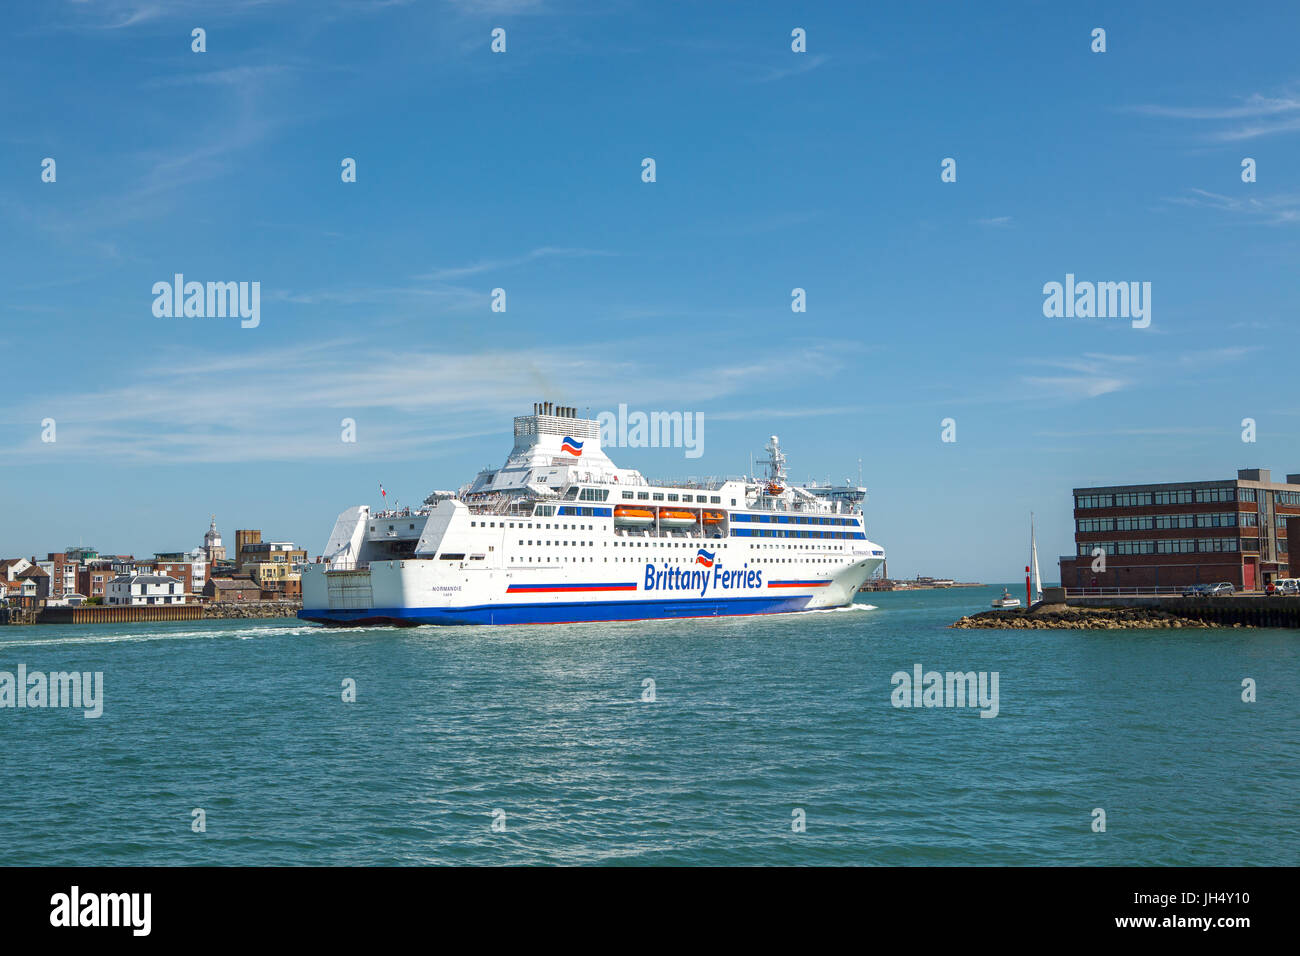 Une image couleur de Brittany Ferries Normandie de quitter le port de Portsmouth. Spice Island et vieux Portsmouth dans l'arrière-plan. Banque D'Images